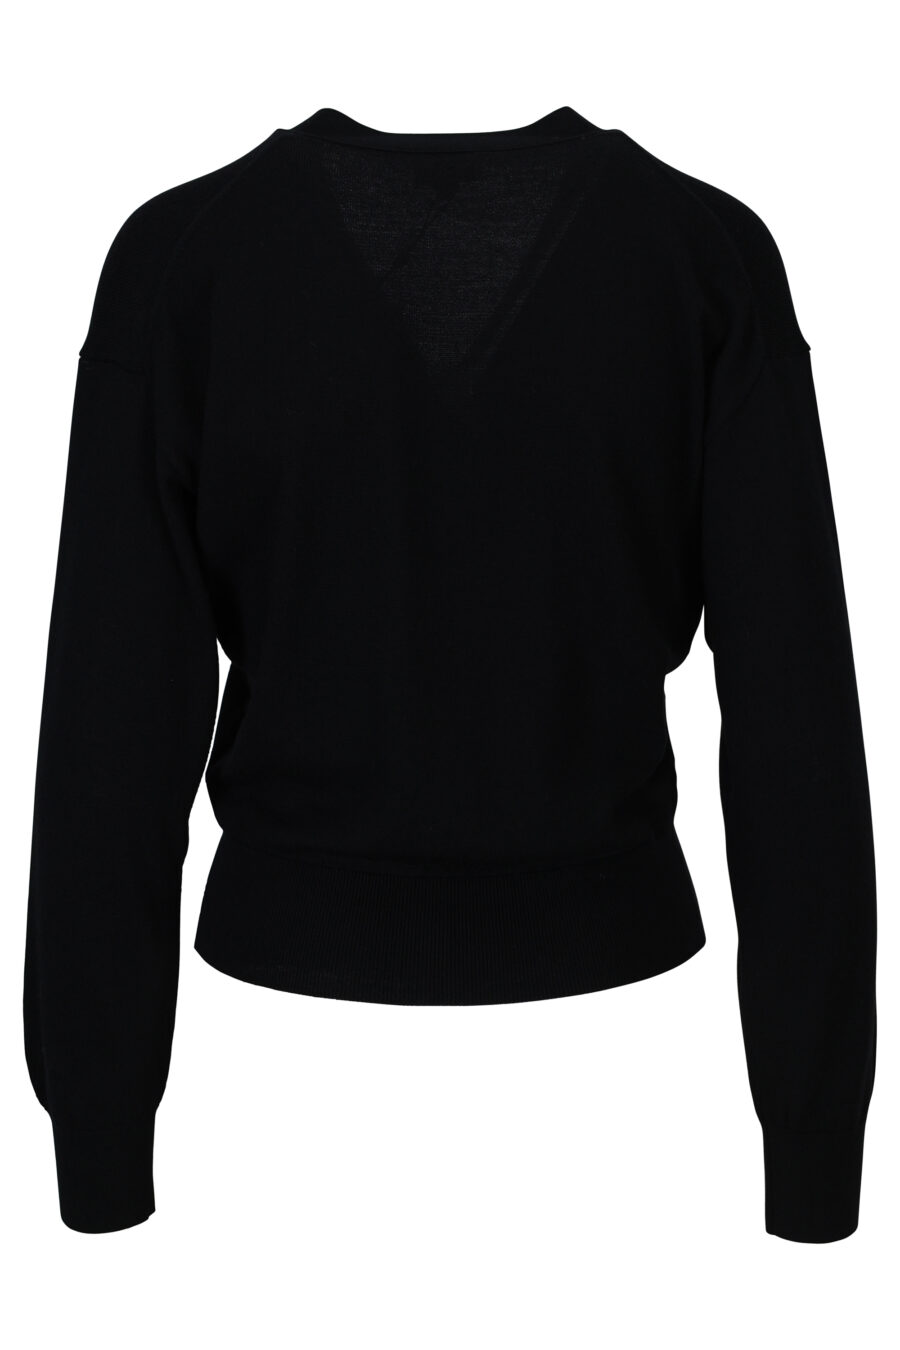 Black woollen jumper with mini-logo "boke flower" - 3612230444249 1